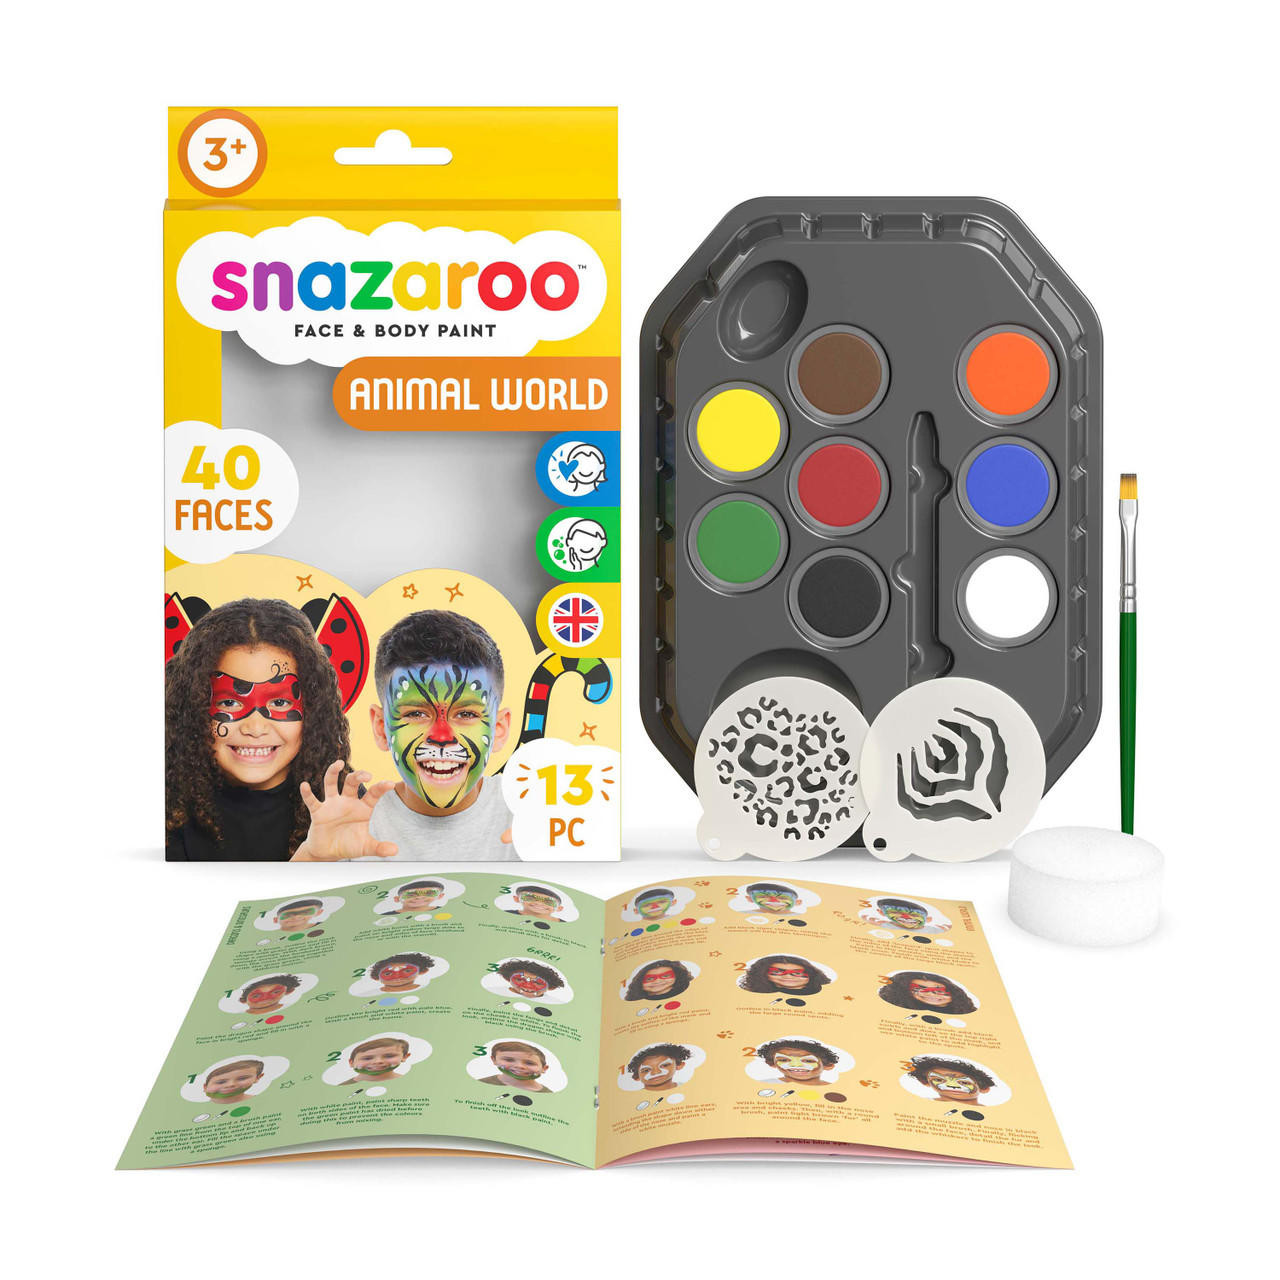 Snazaroo Animal World Face Paint Kit